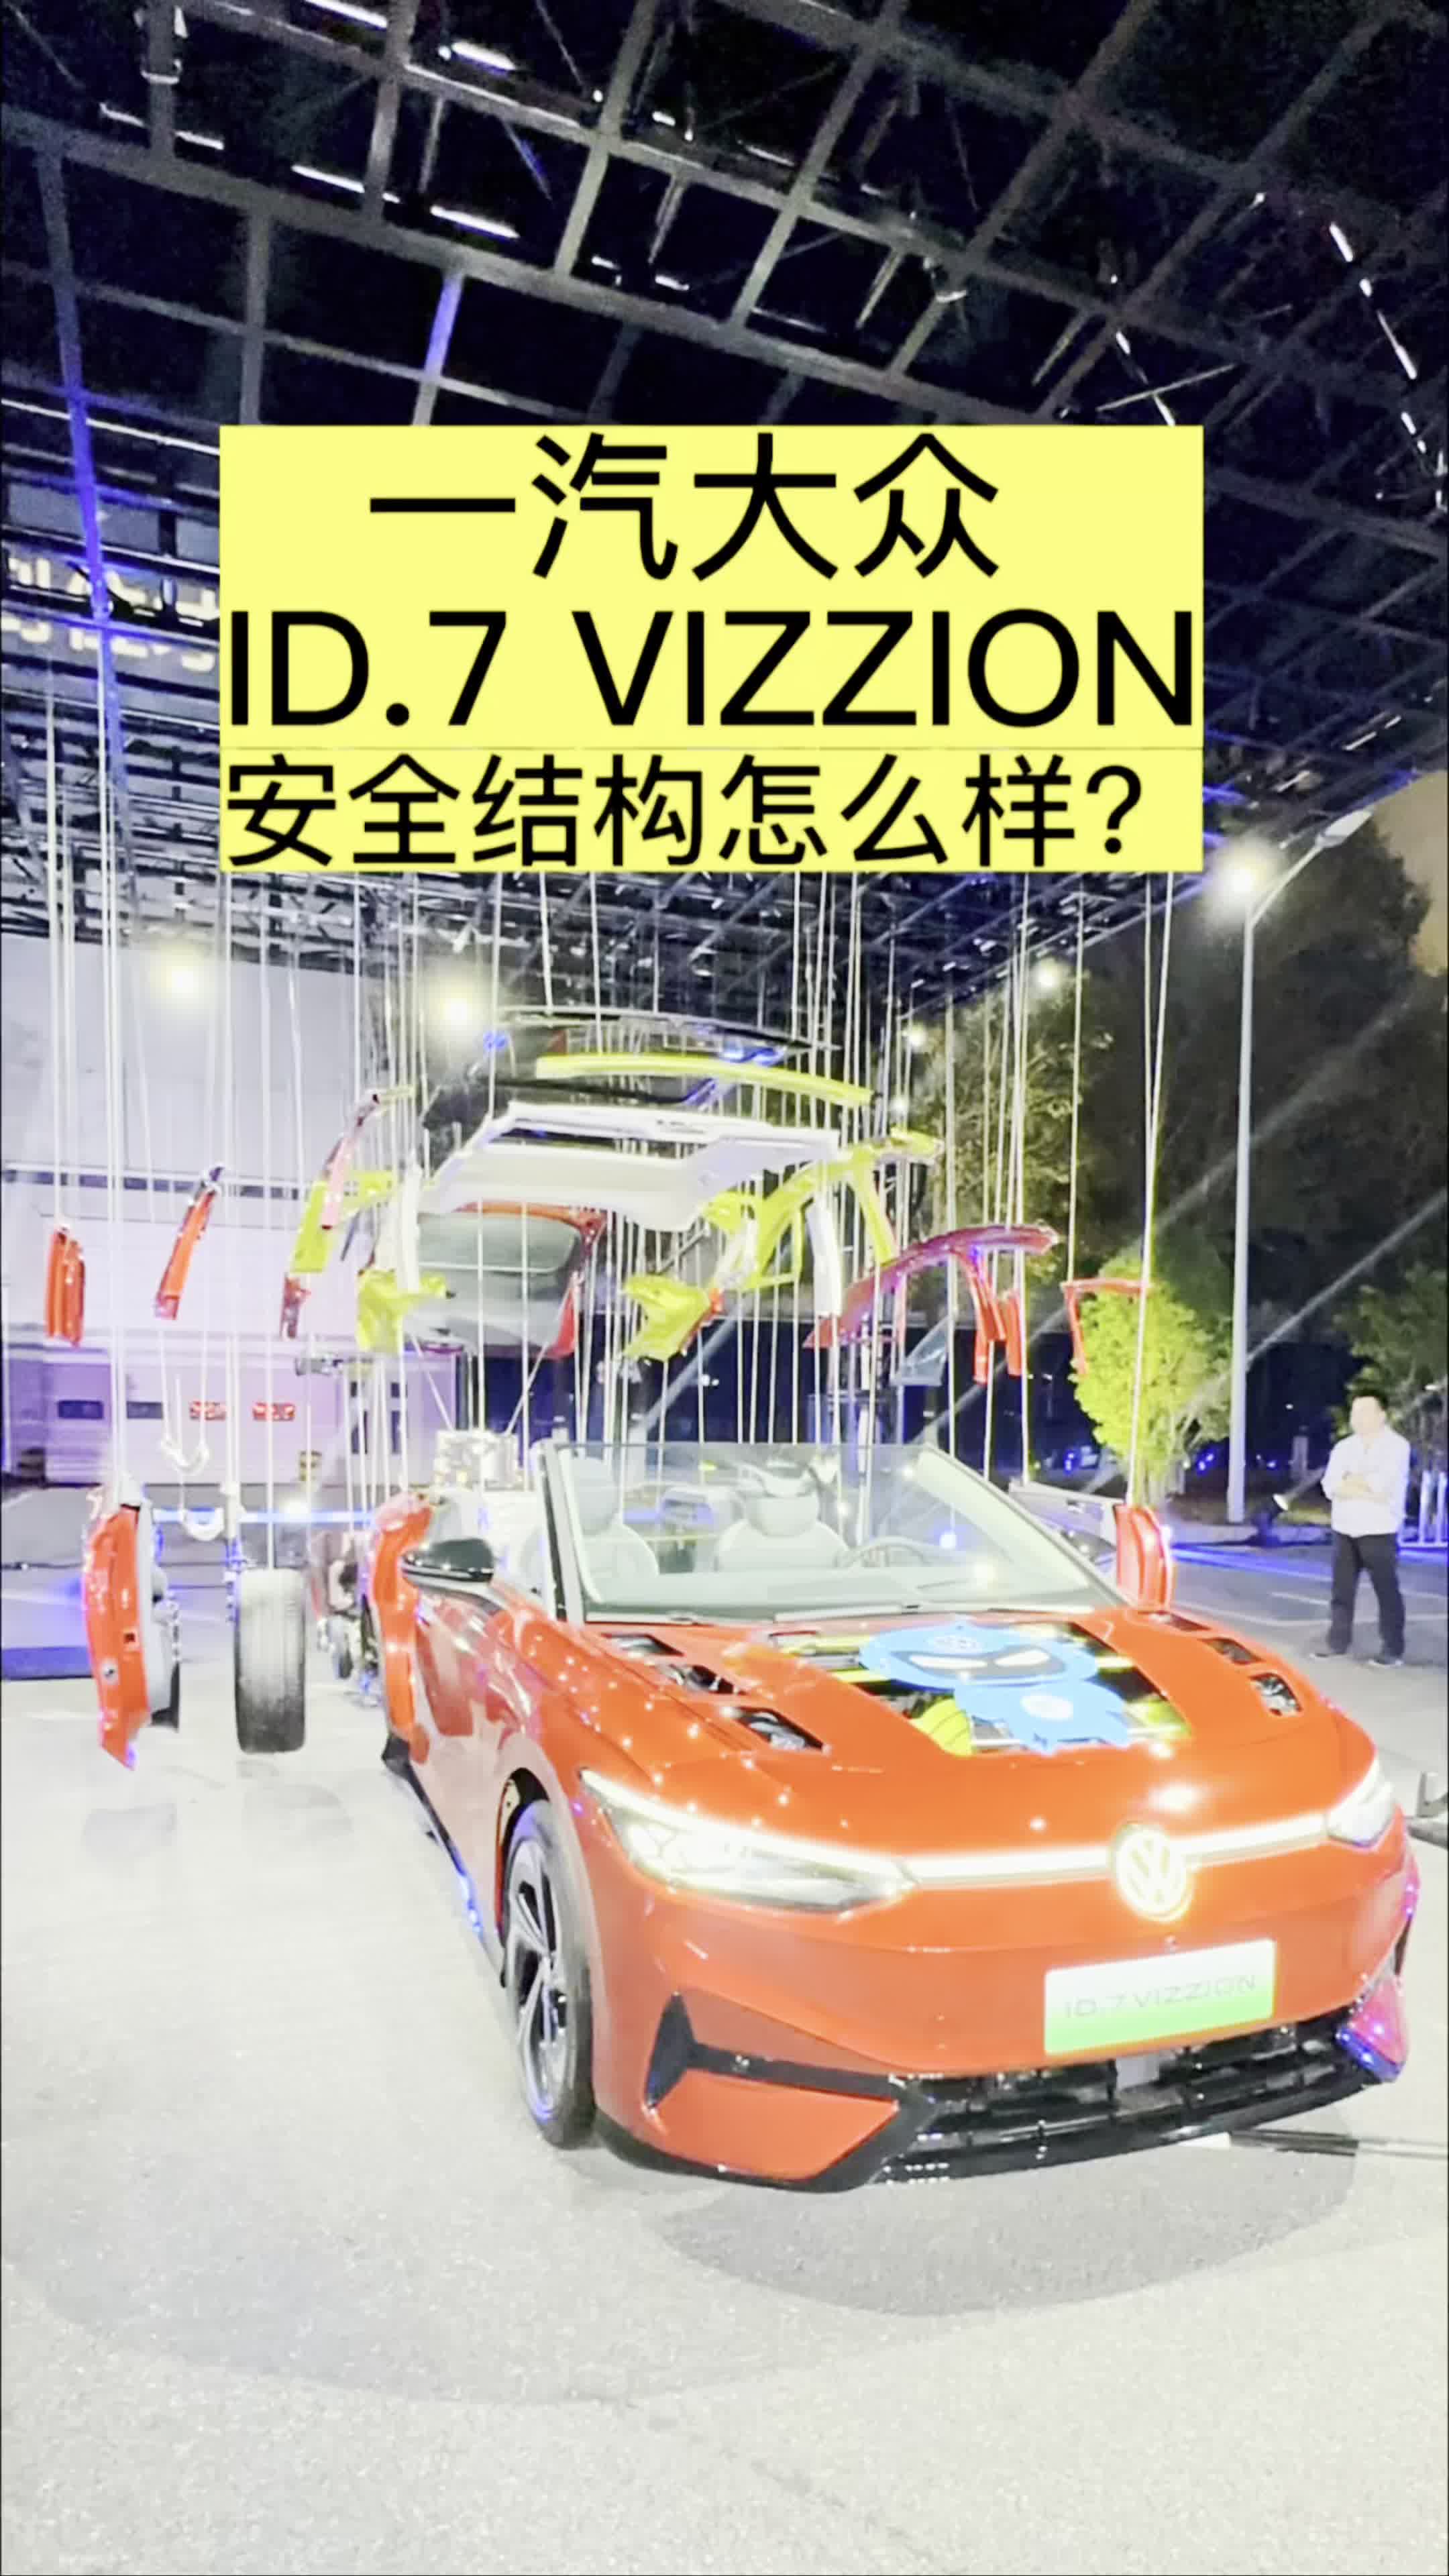 大厂造车有看头 一汽大众ID.7 VIZZION安全吗？